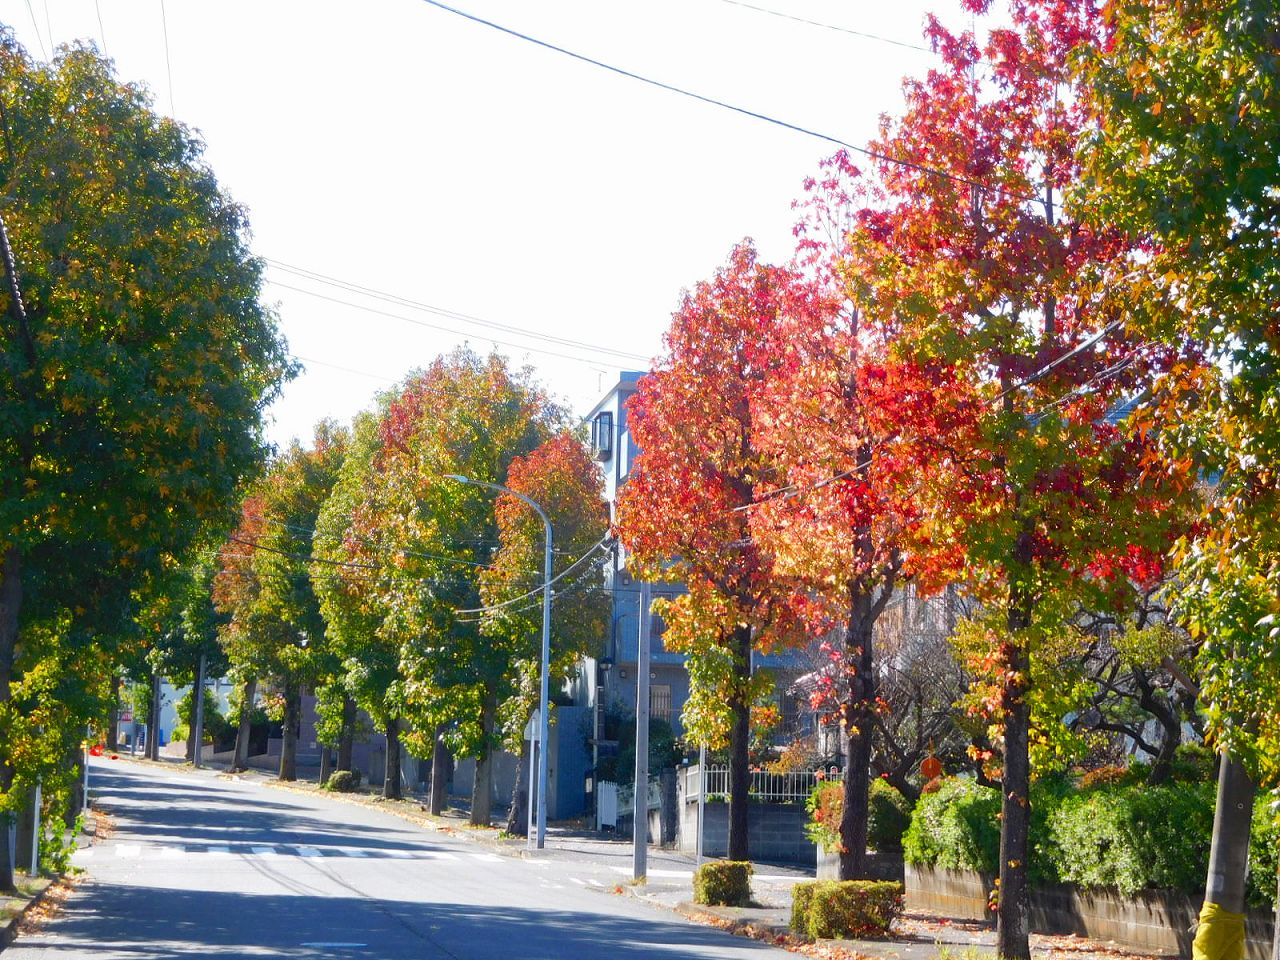 紅葉が始まっている街路樹